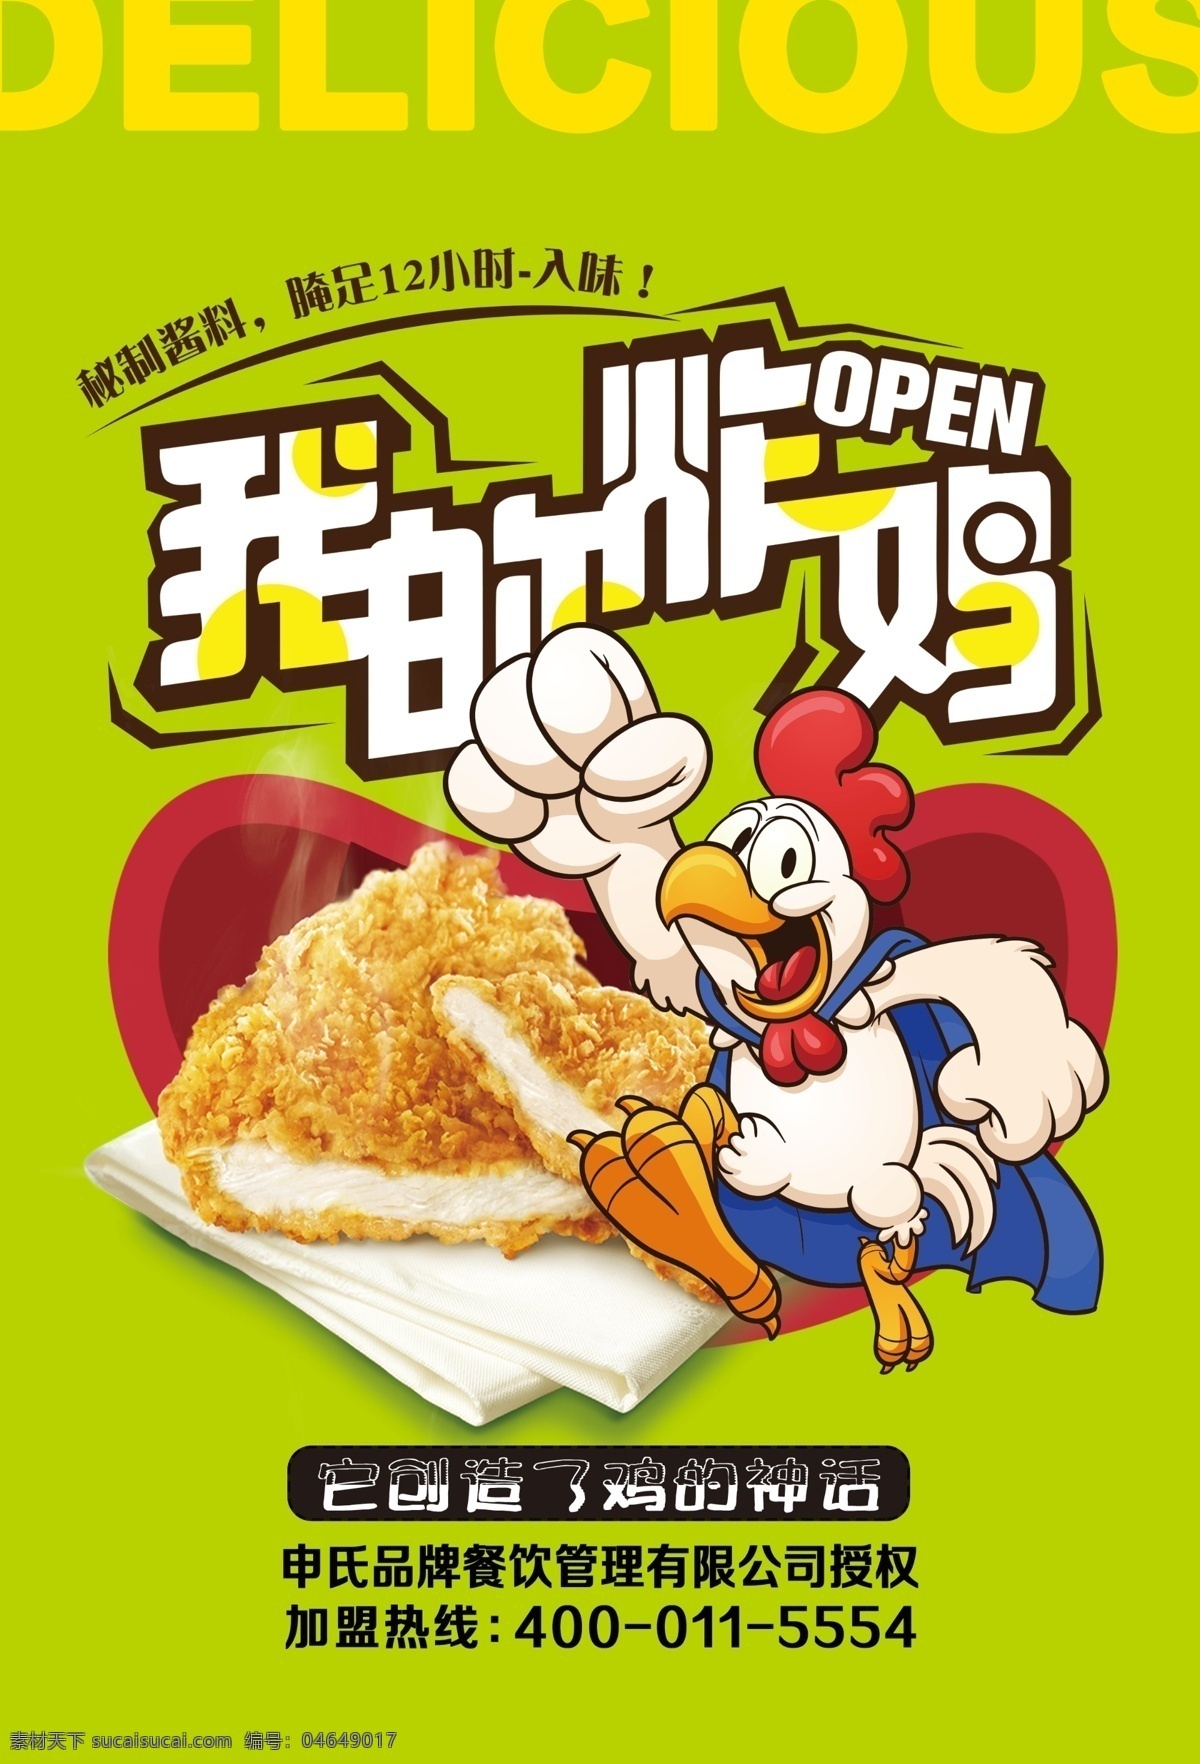 炸鸡产品 炸鸡logo 鸡 logo 炸鸡宣传